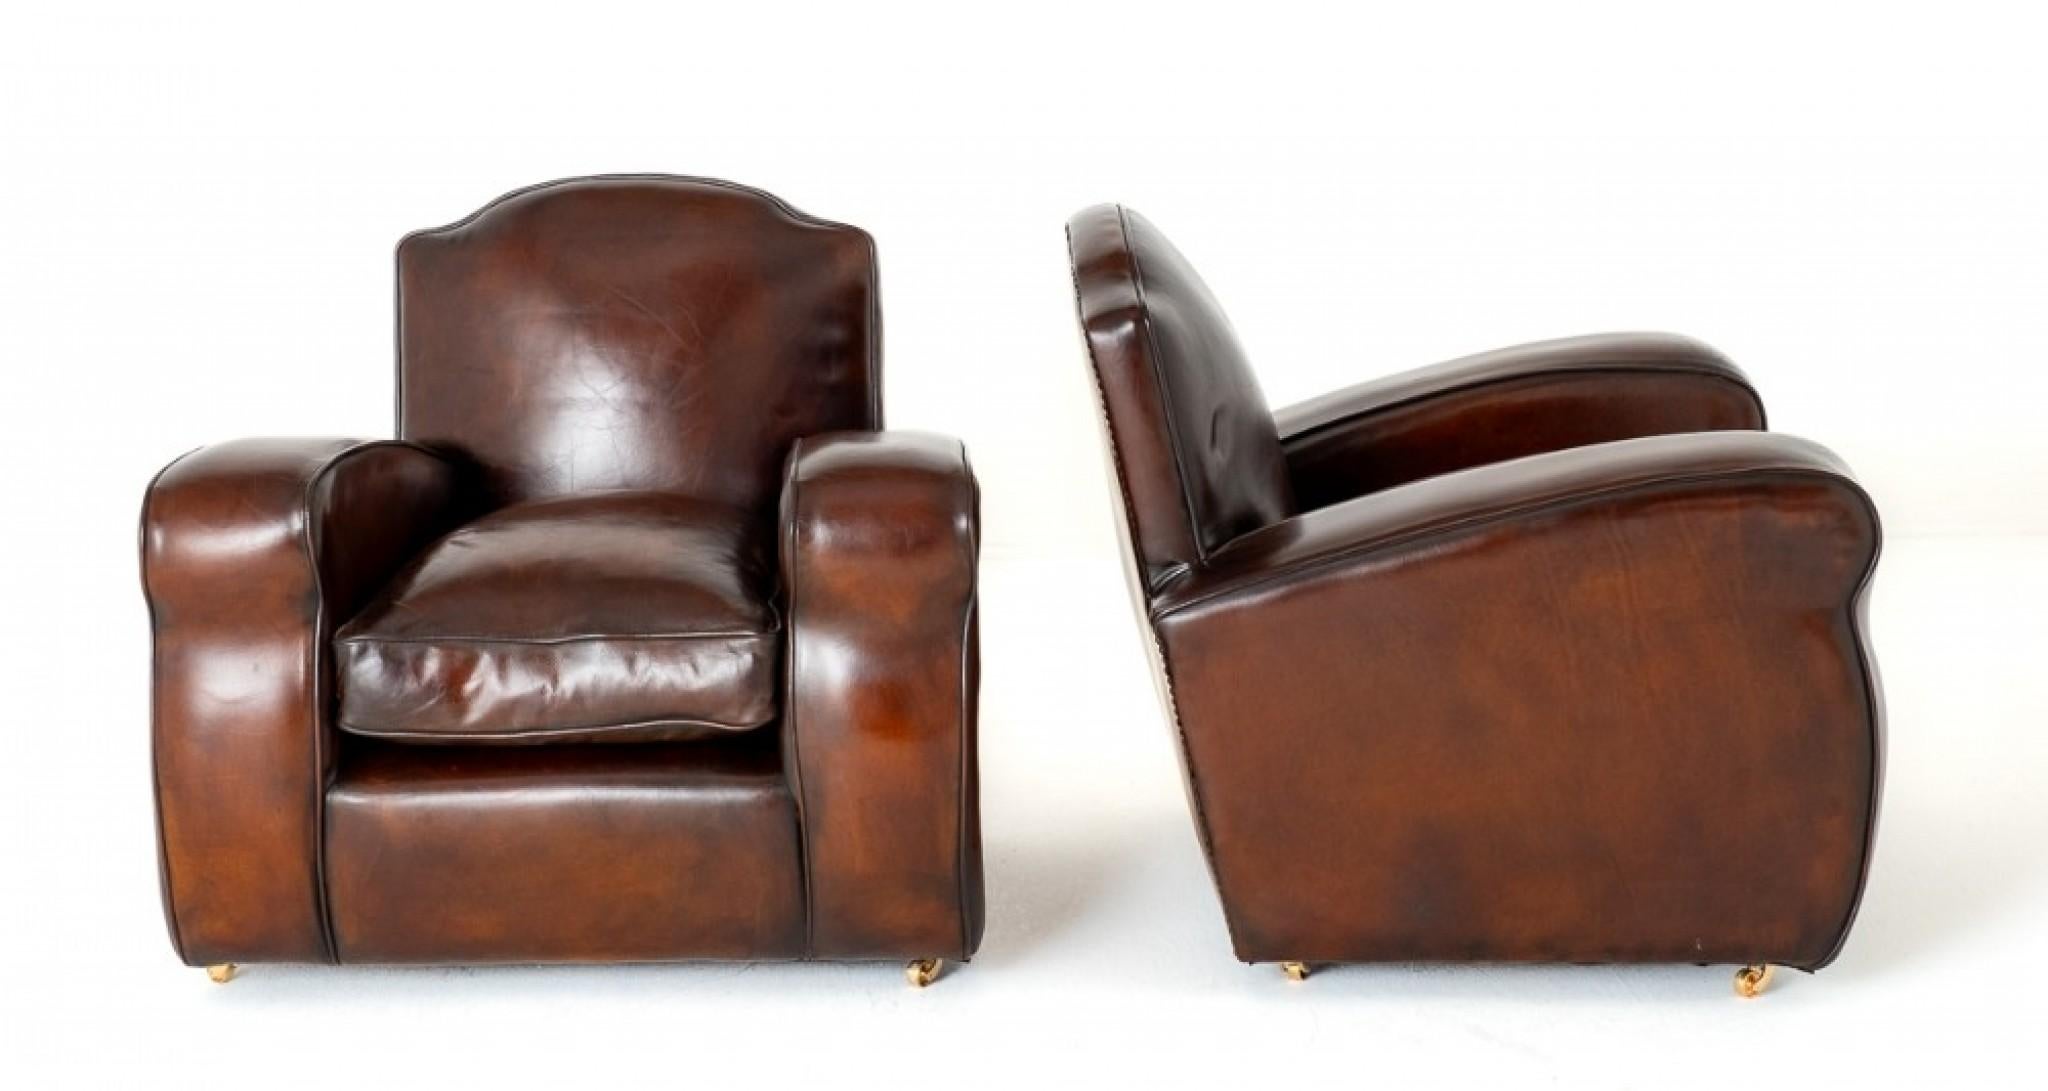 Gutes Paar Art Deco Leder Clubsessel.
Diese Clubsessel zeichnen sich durch die für das Art déco typischen breiten Armlehnen und eine stilvoll geformte Rückenlehne aus.
Die Stühle haben eine ledergefüllte Polsterung, die sie sehr bequem macht.
Die